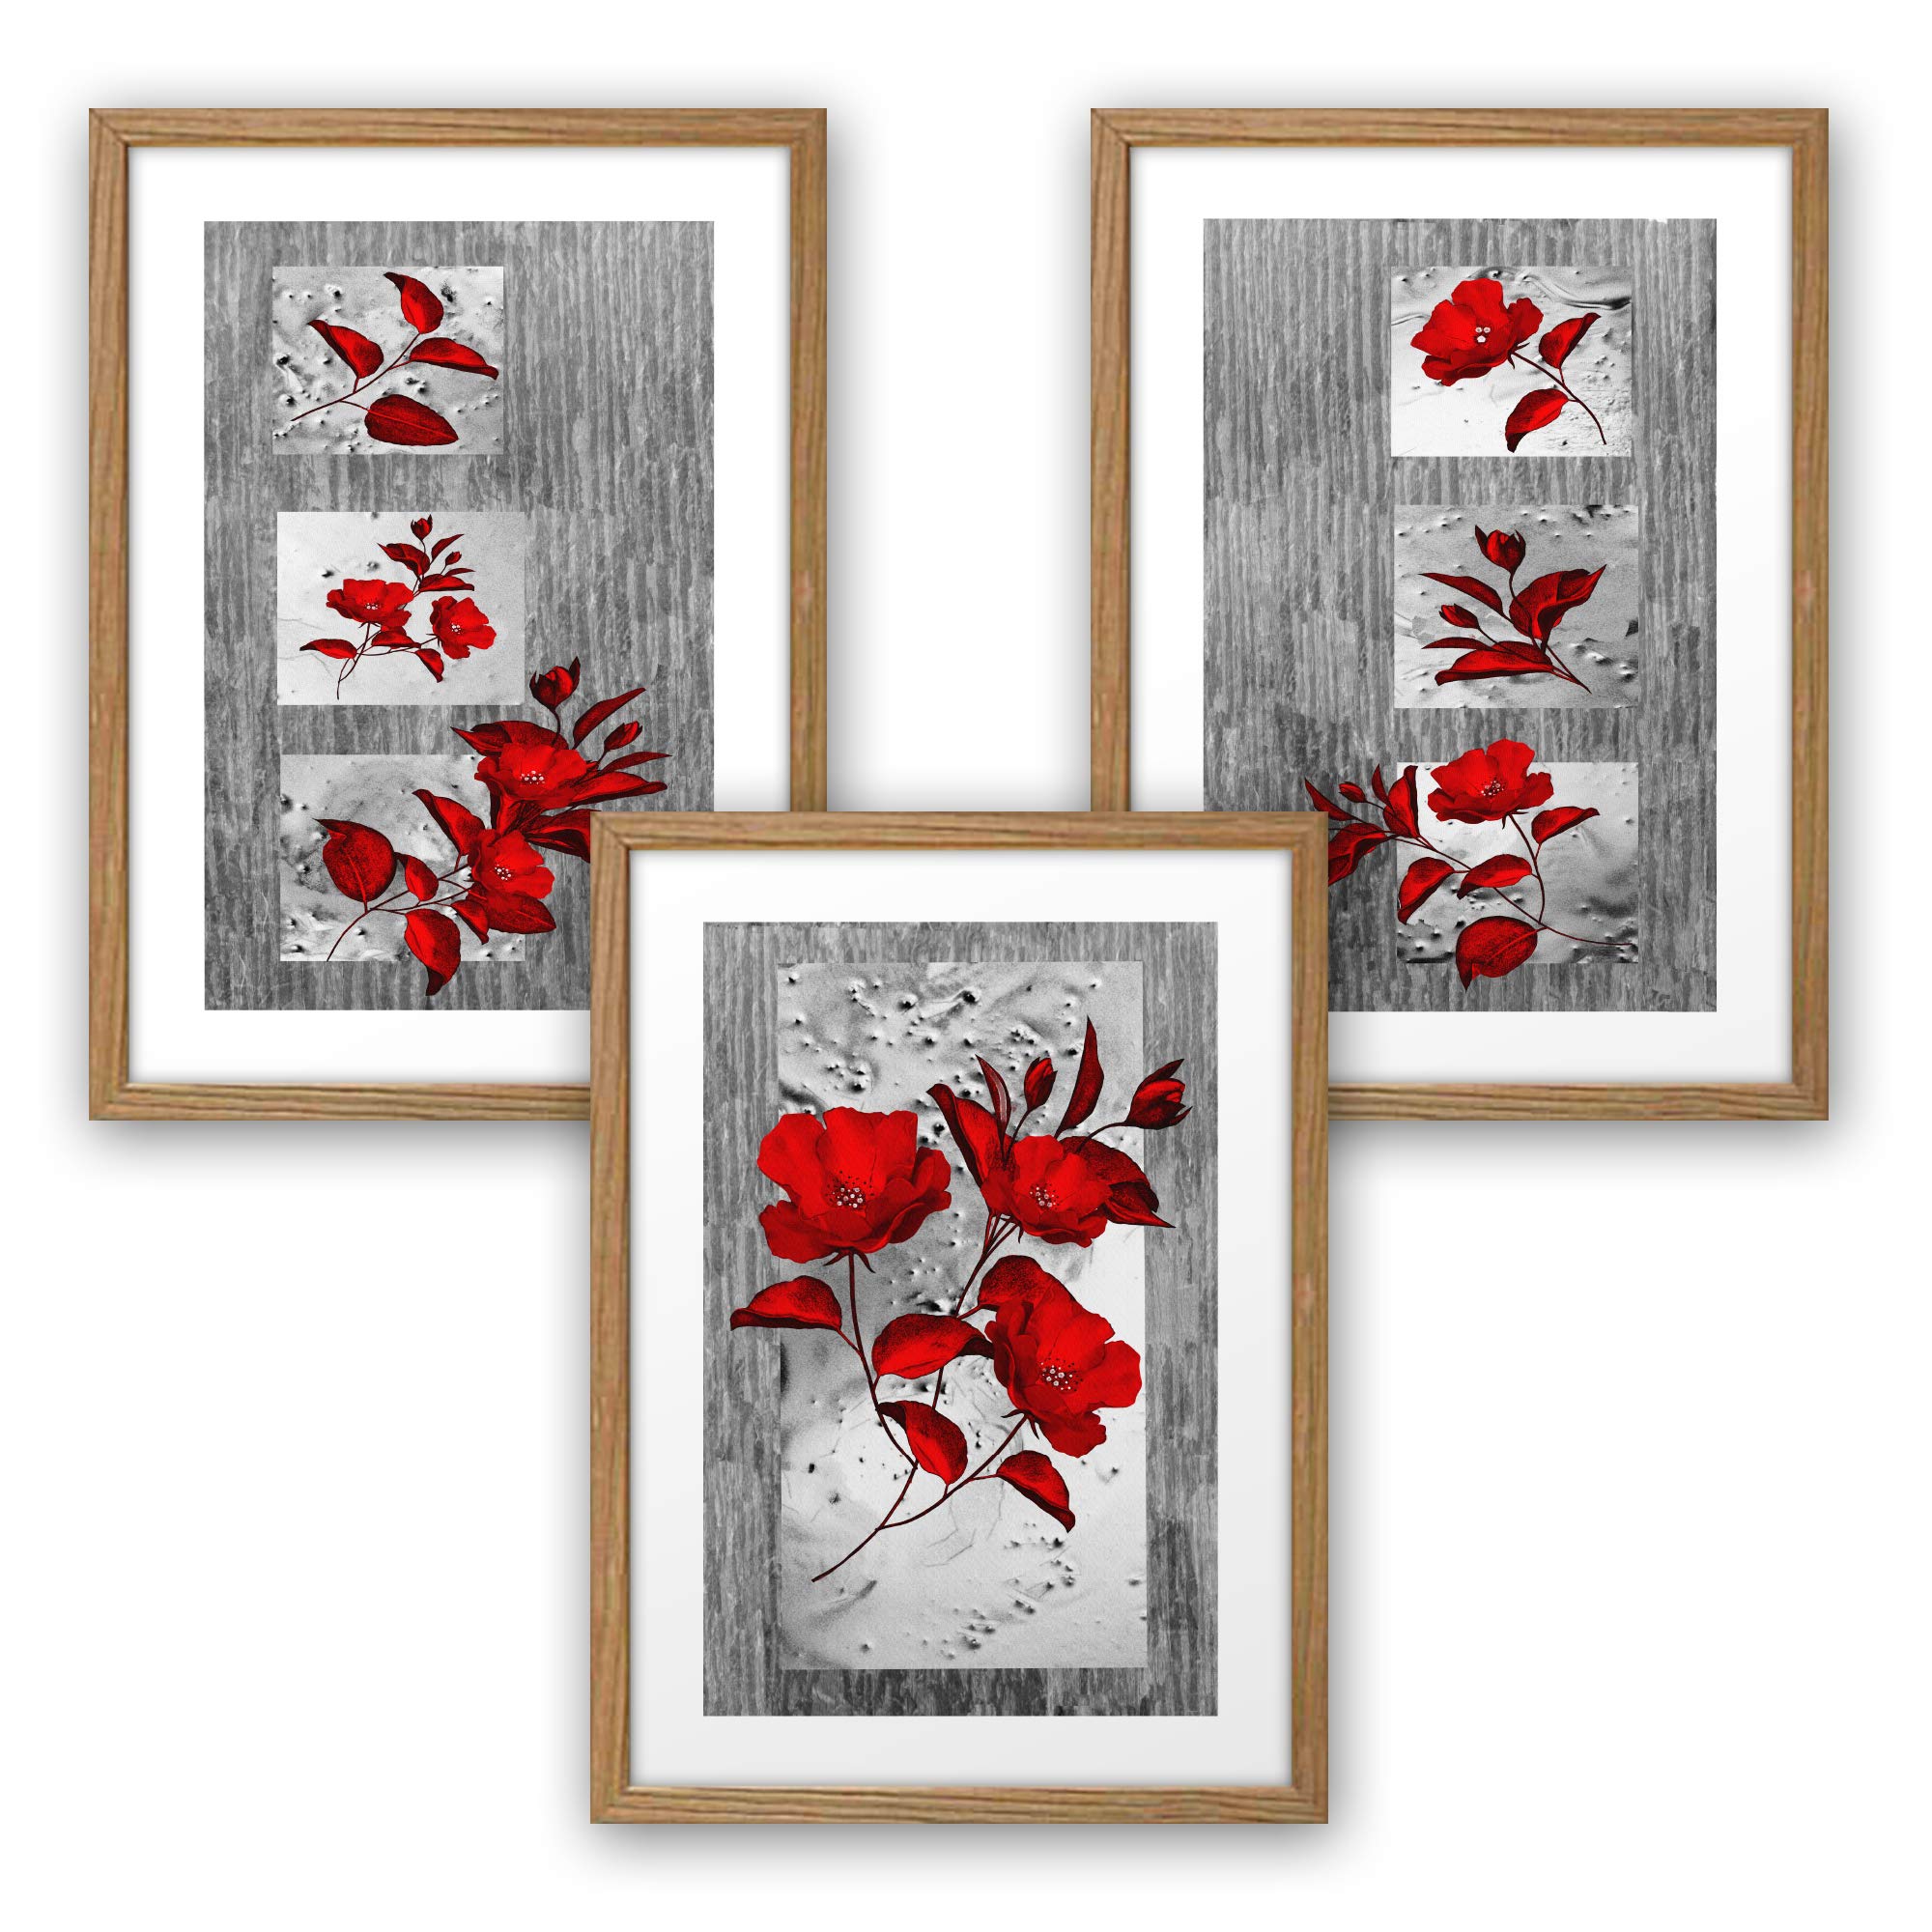 3-teiliges Premium Poster-Set | Kunstdruck | rote Blüten | Deko Bild für Ihre Wand | optional mit Rahmen | Wohnzimmer Schlafzimmer Modern Fine Art | DIN A4 / A3 (A3, natur Rahmen)